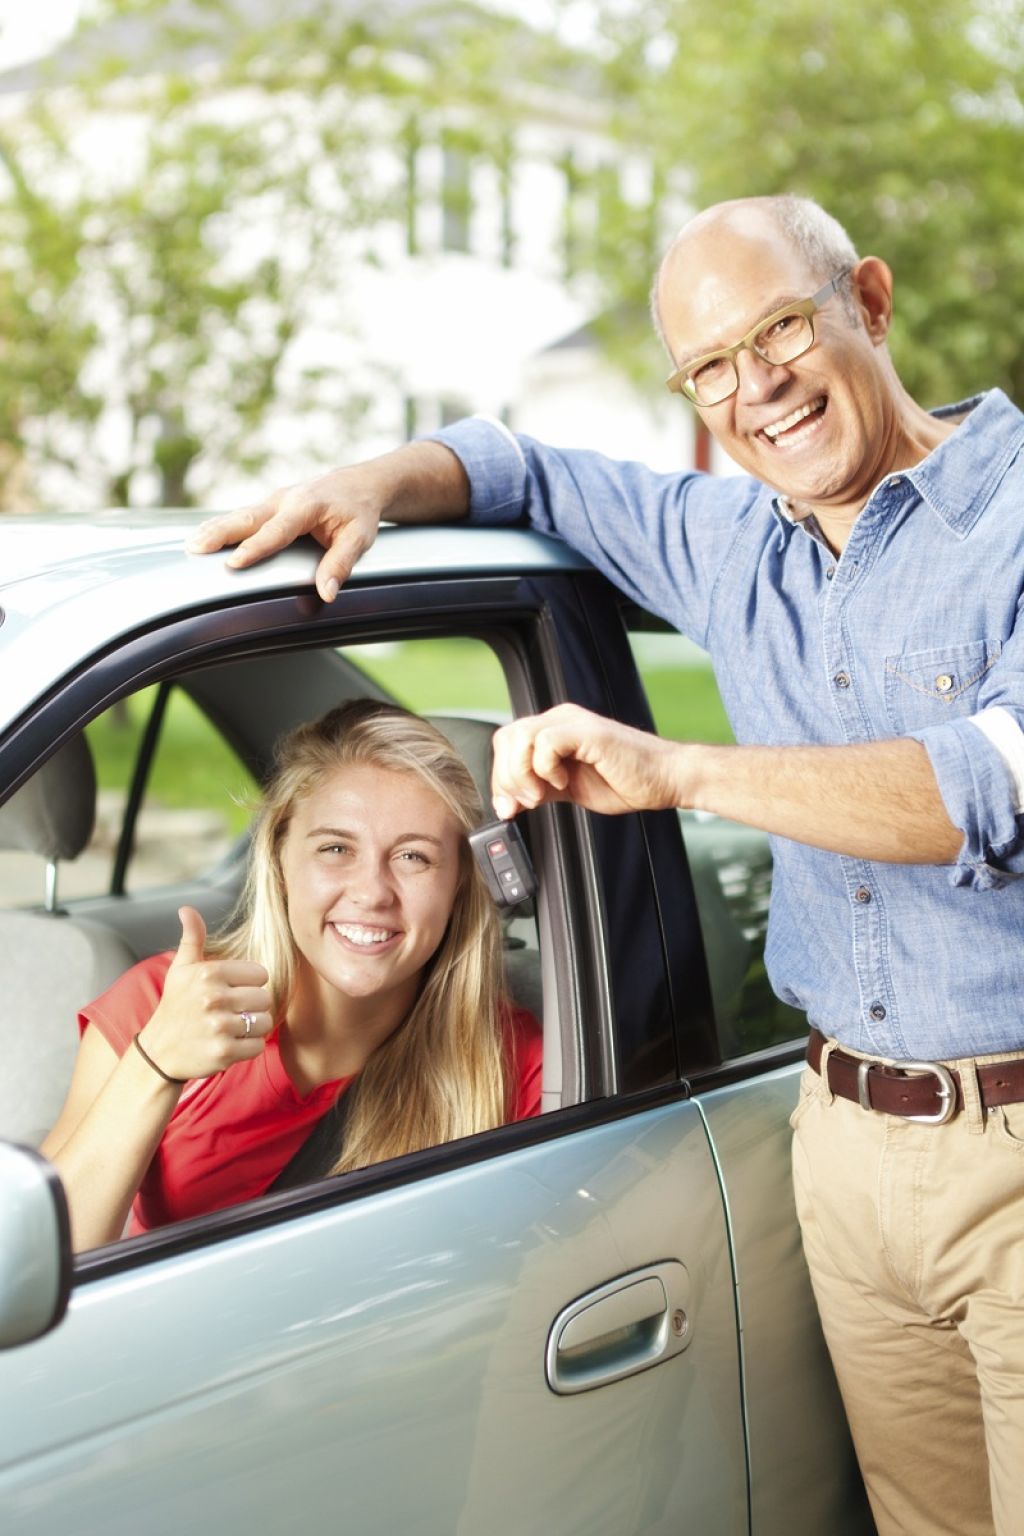 Avtomobilsko zavarovanje ‒ družinski bonus, mladi voznik, kasko, AO, AO+ ... kako prepoznati pravo izbiro?